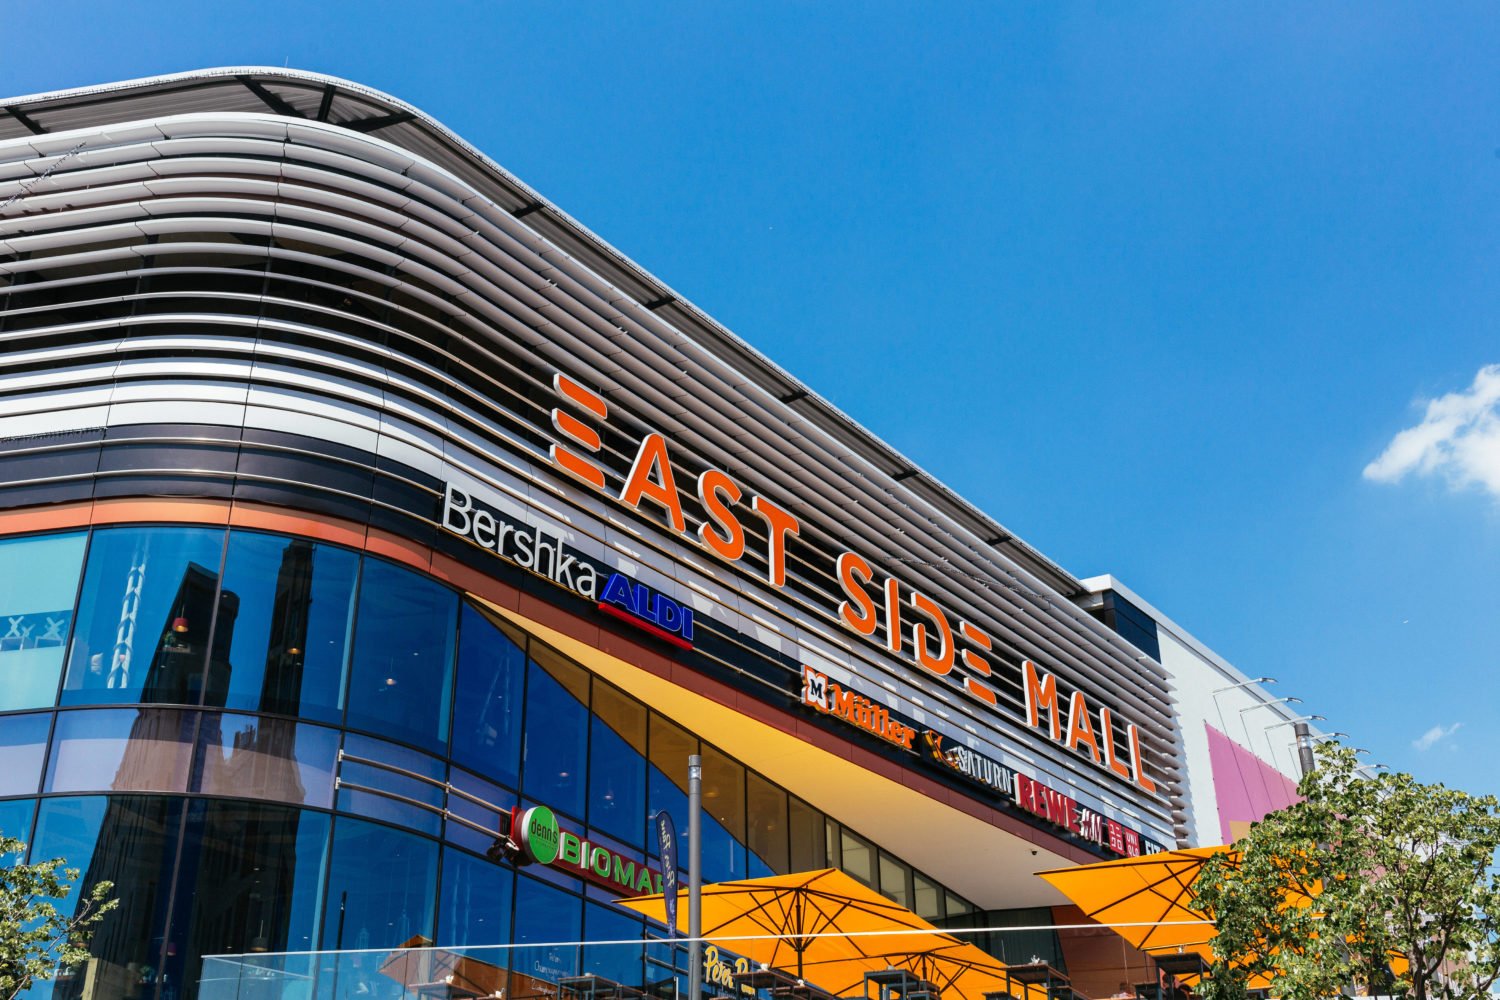 Die East Side Mall im Sonnenlicht. 